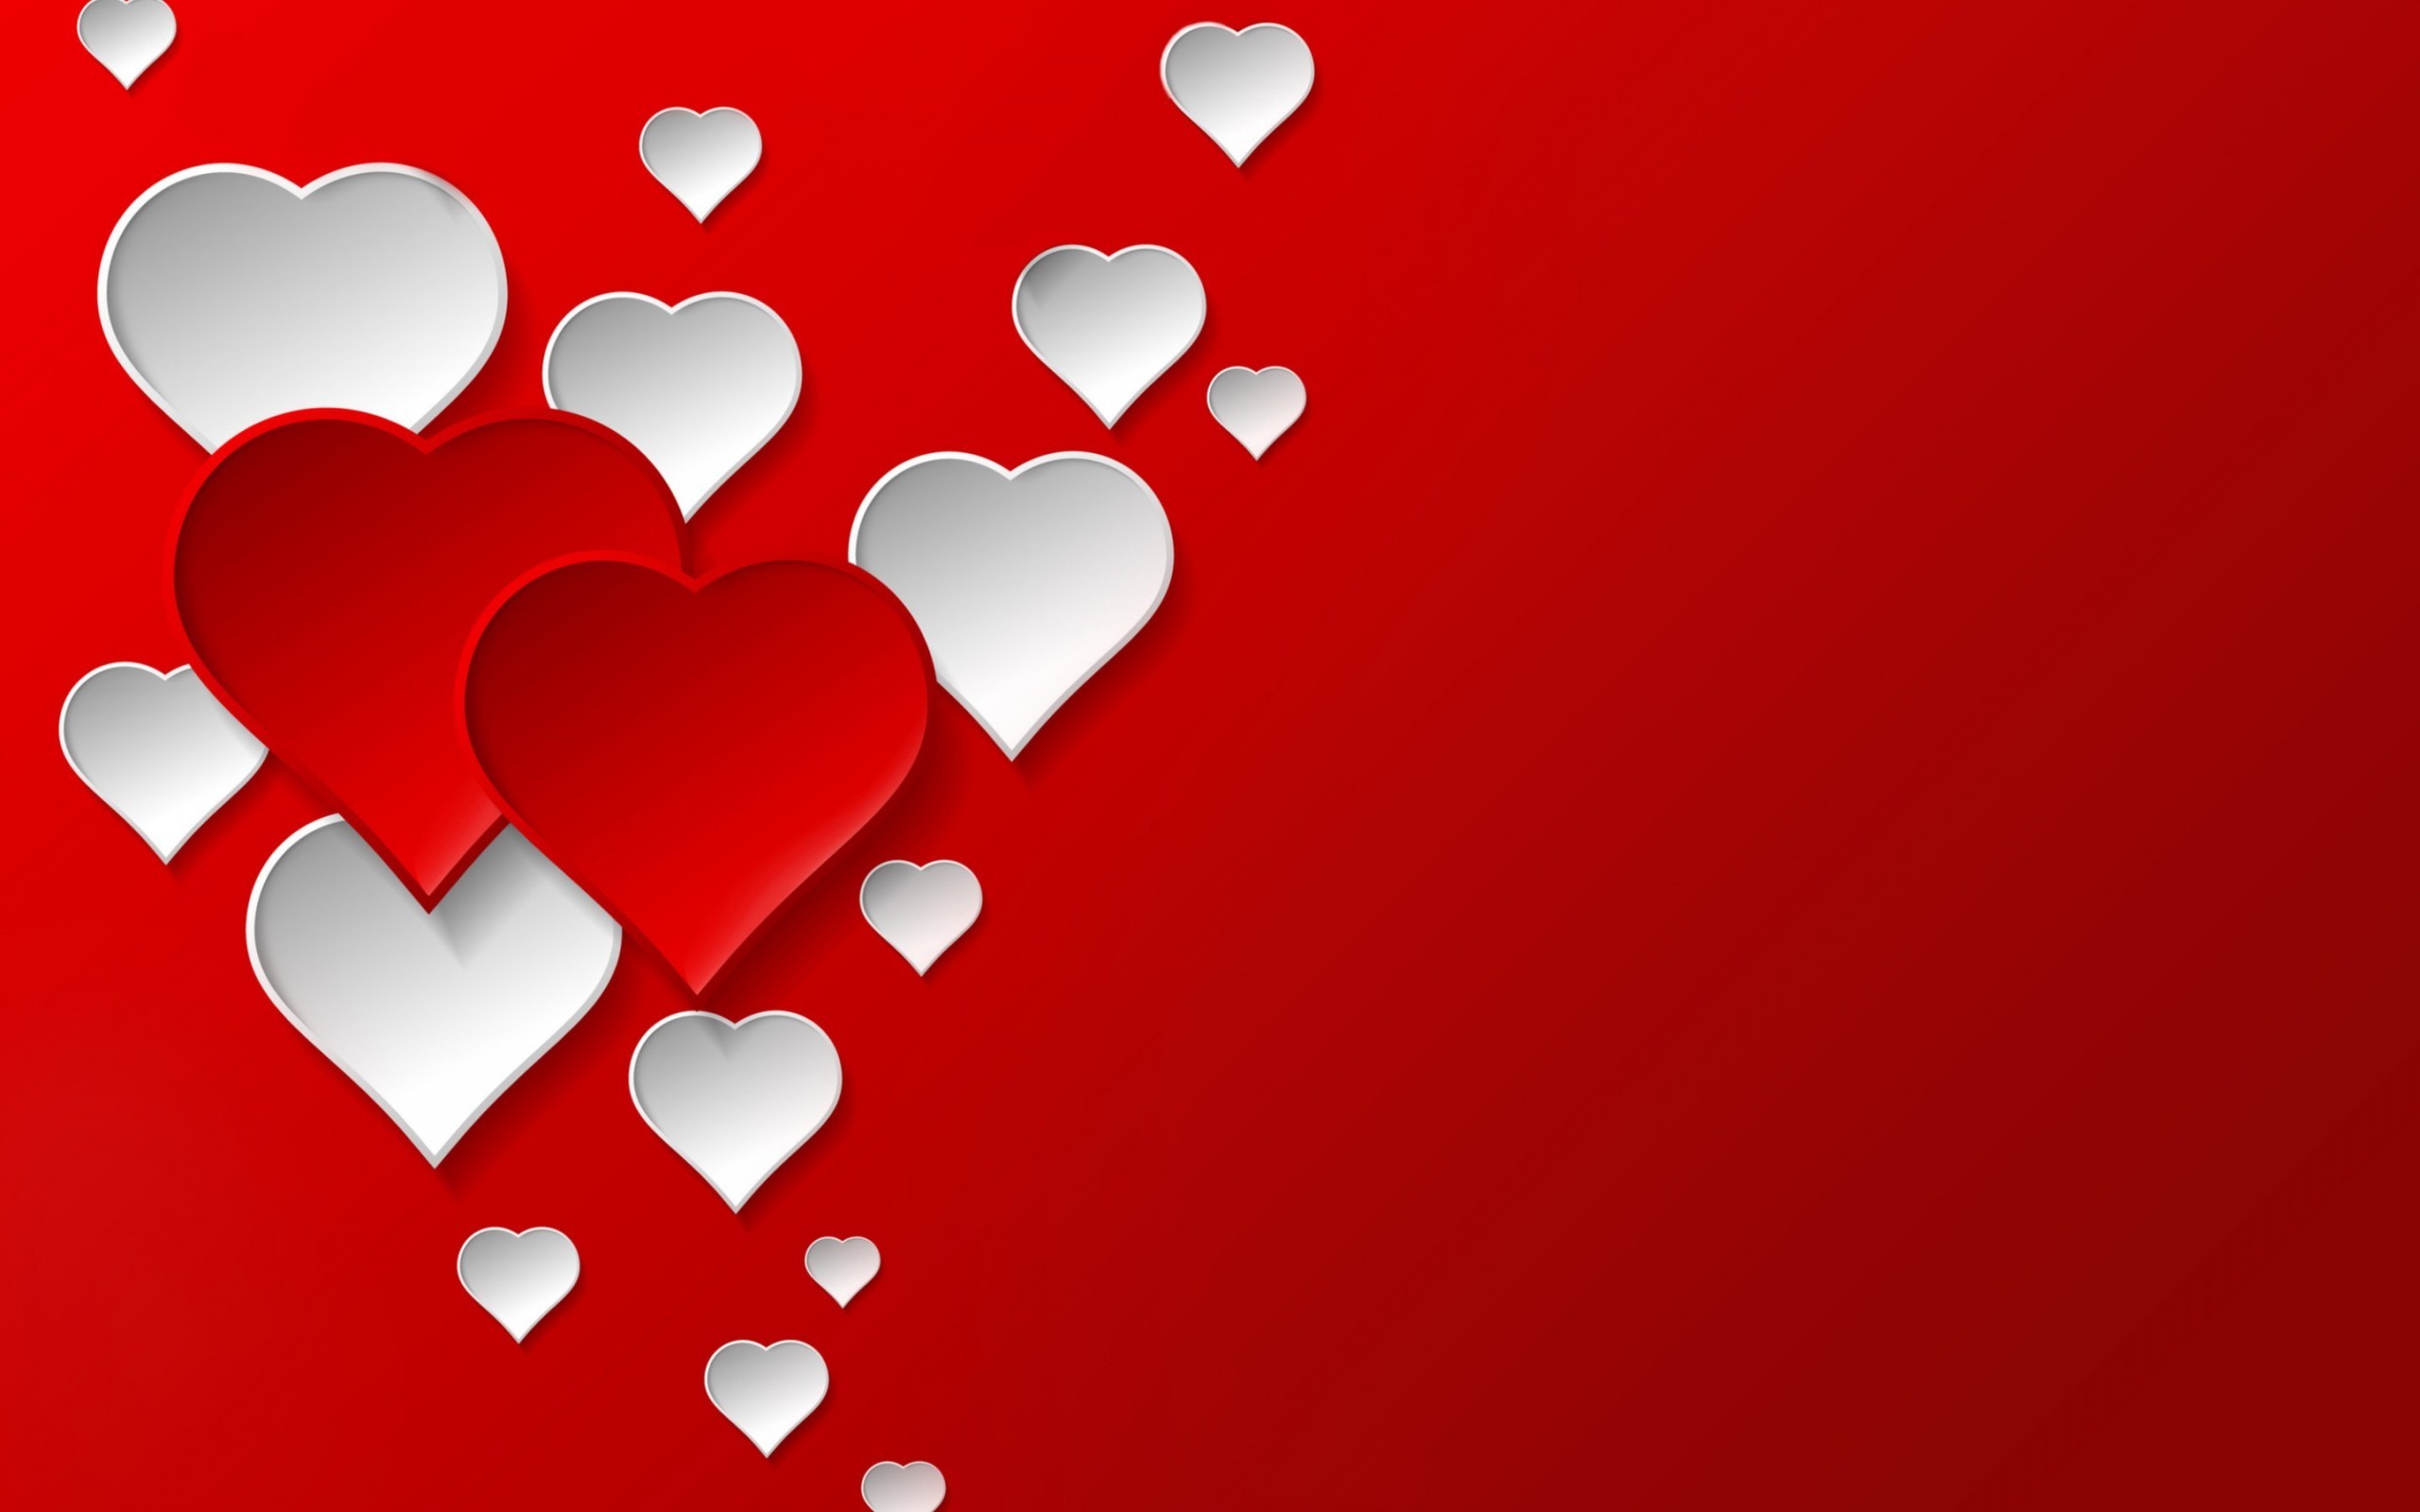 Trái tim đỏ - Biểu tượng của tình yêu và sự trân trọng. Nhìn vào những hình ảnh liên quan đến từ khóa \